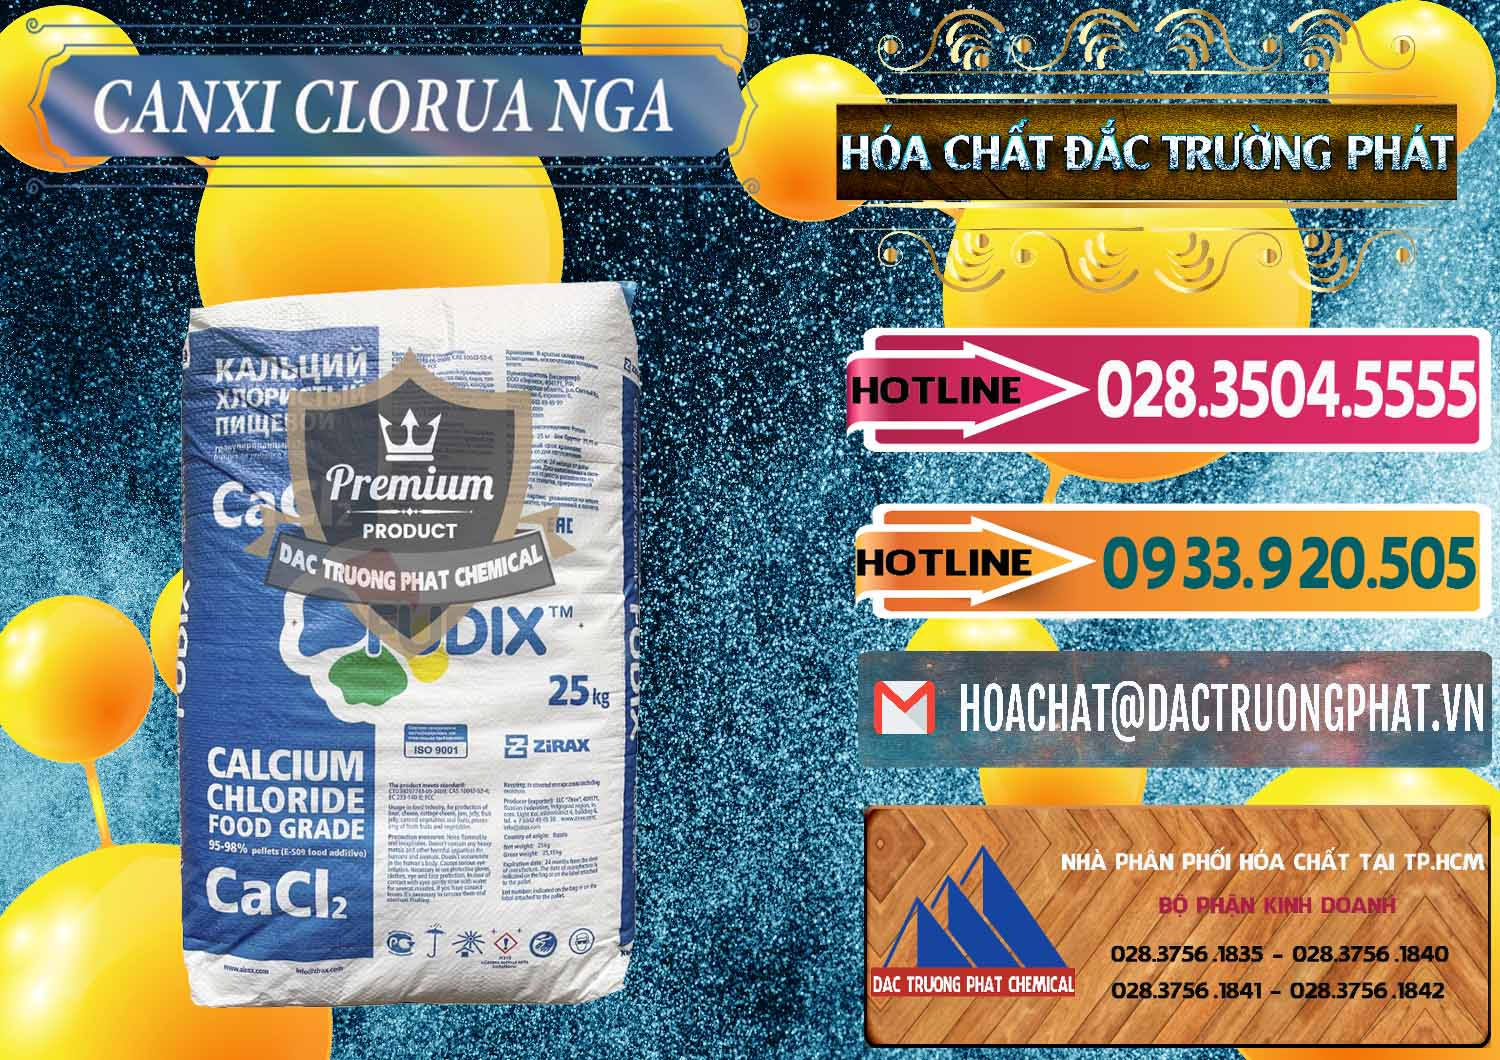 Nơi chuyên bán & phân phối CaCl2 – Canxi Clorua Nga Russia - 0430 - Đơn vị cung cấp và bán hóa chất tại TP.HCM - dactruongphat.vn